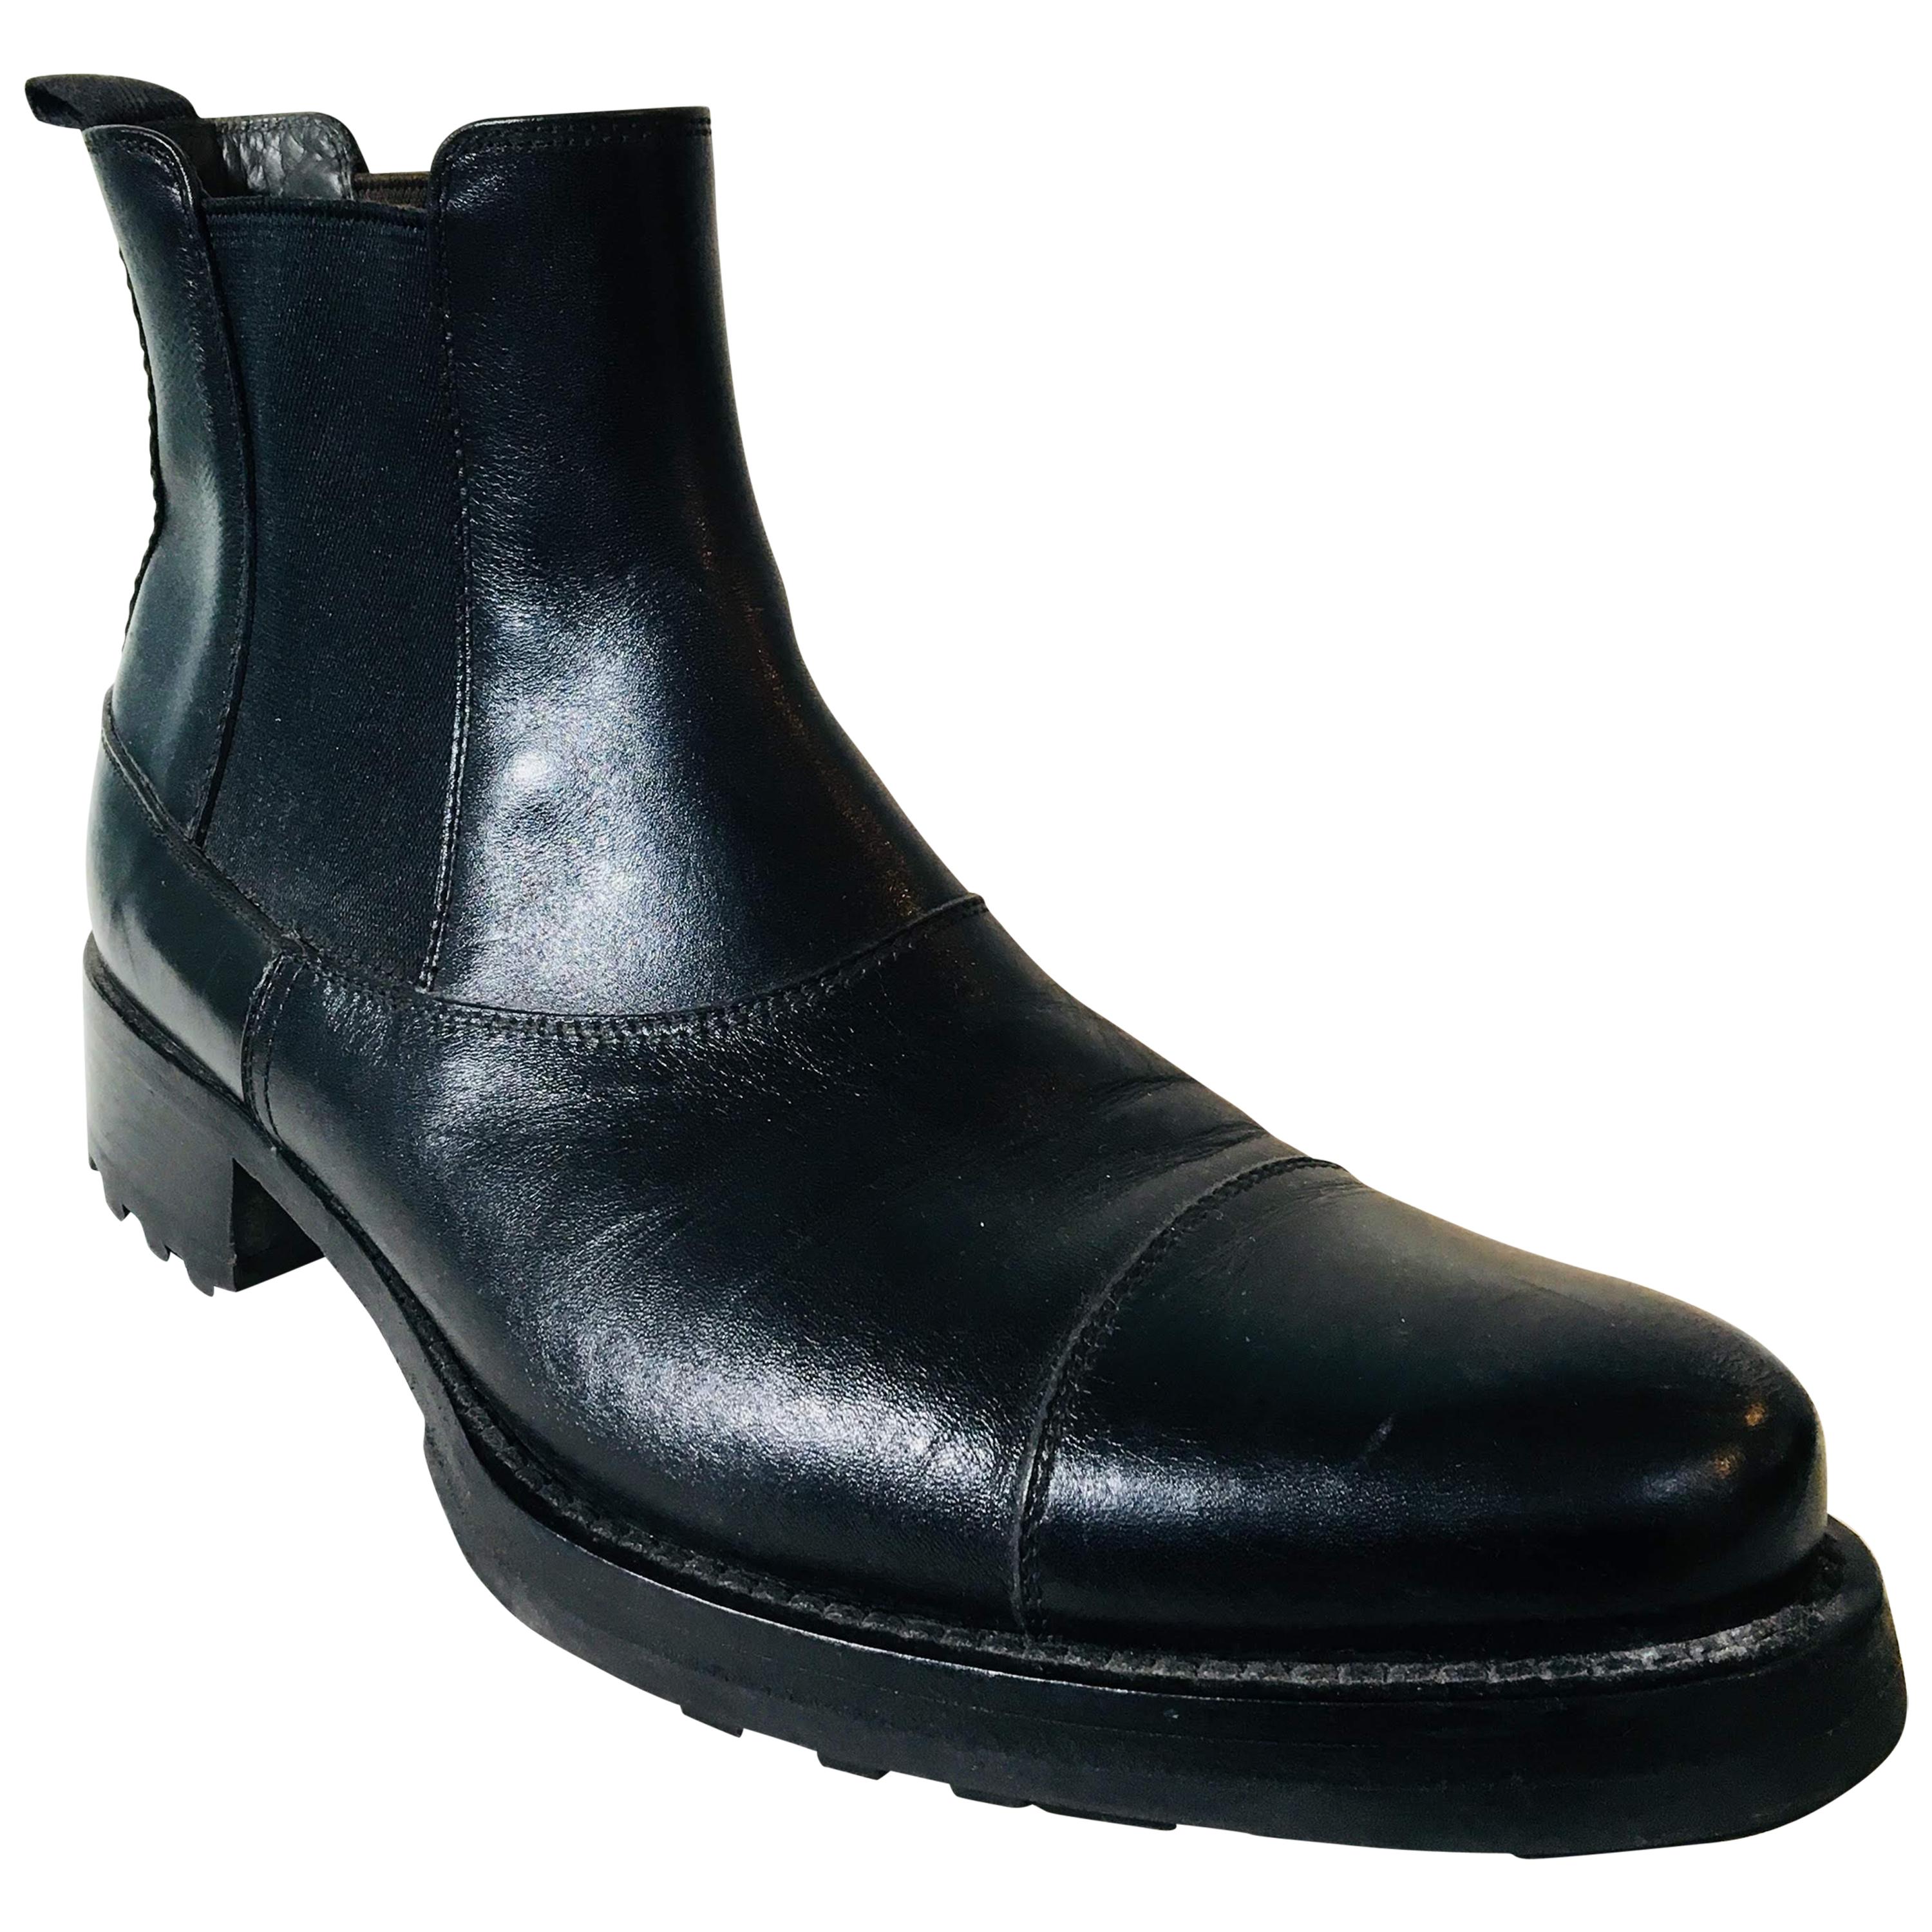 Miu Miu Boots - 15 For Sale on 1stDibs | miu miu studded boots 